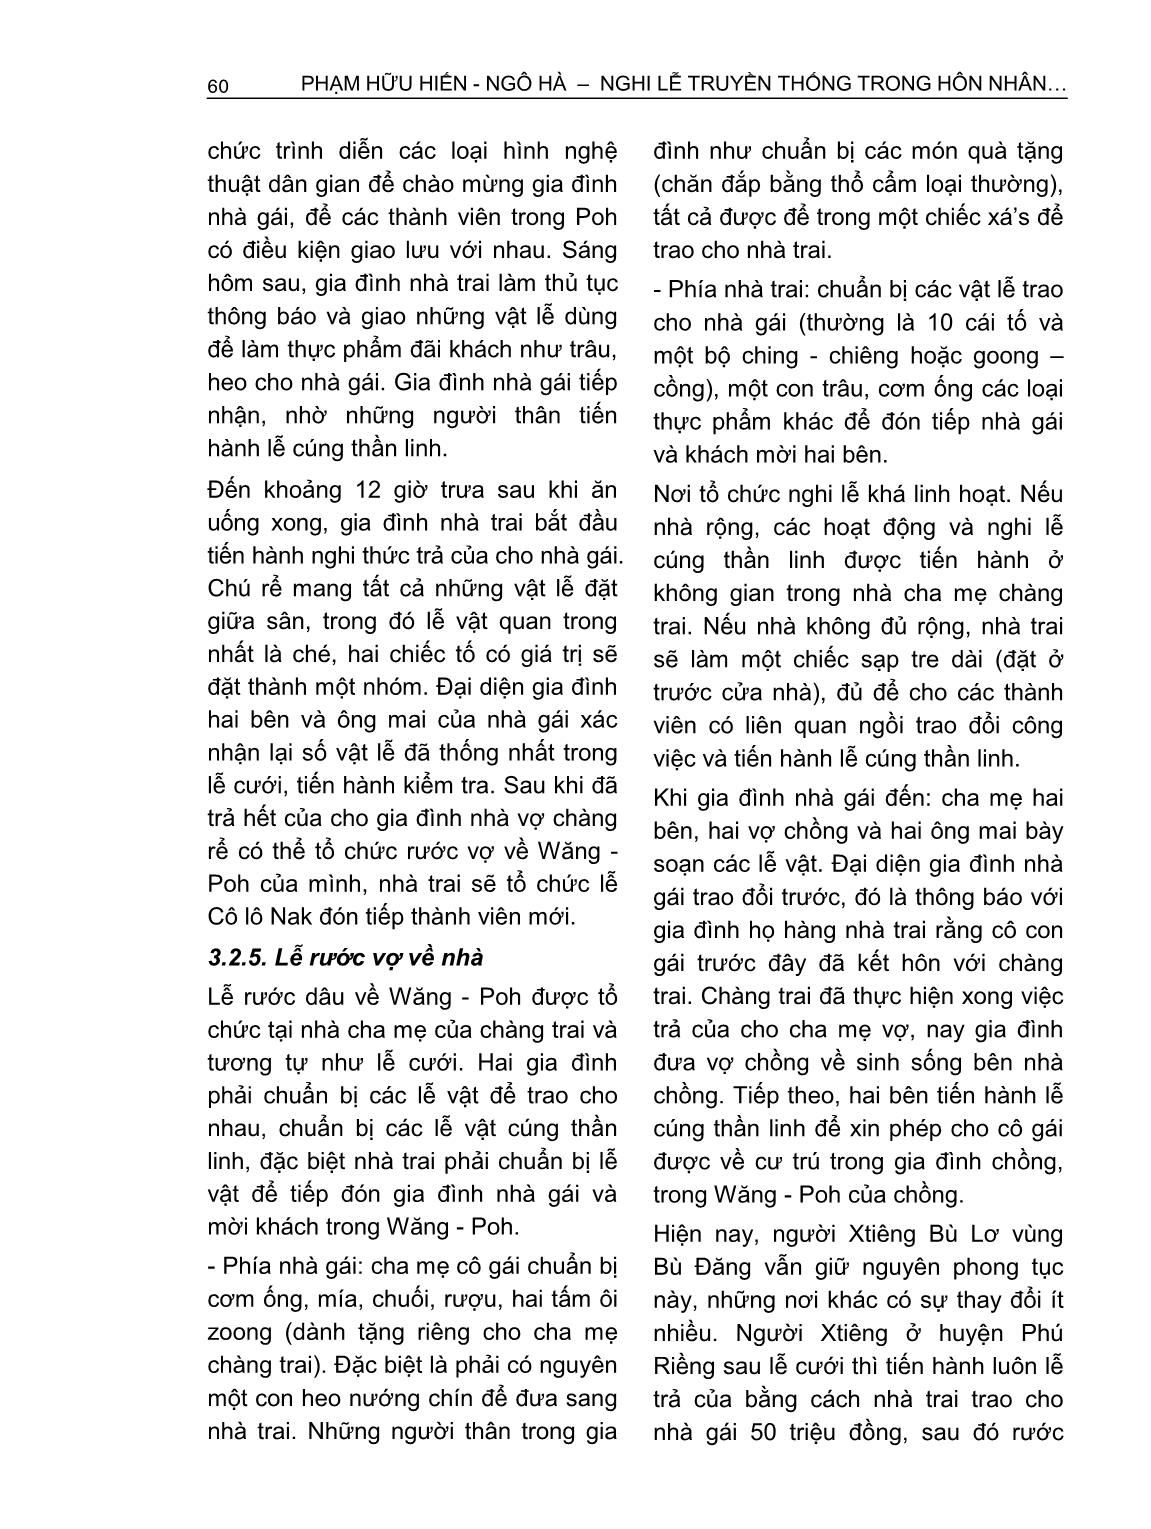 Nghi lễ truyền thống trong hôn nhân của người Xtiêng ở Bình Phước trang 10